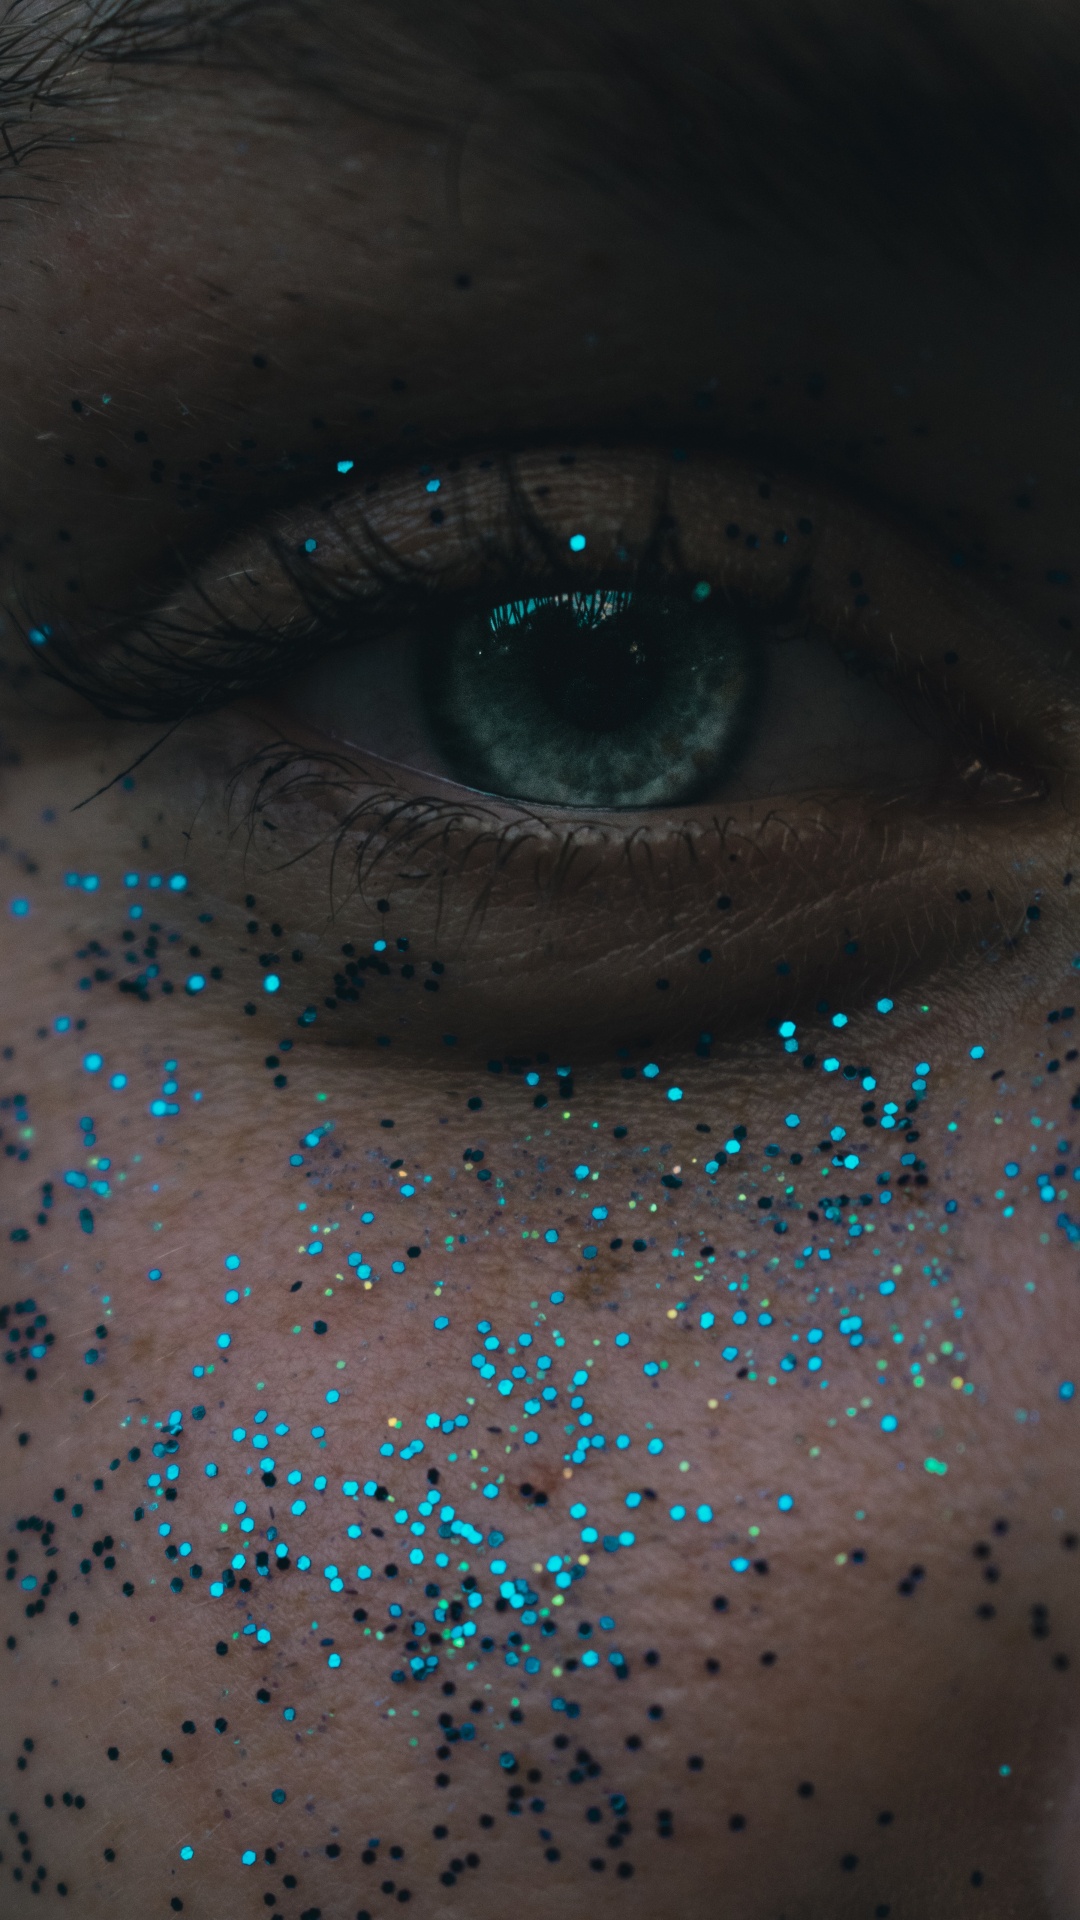 Personen Auge Mit Blauen Augen. Wallpaper in 1080x1920 Resolution